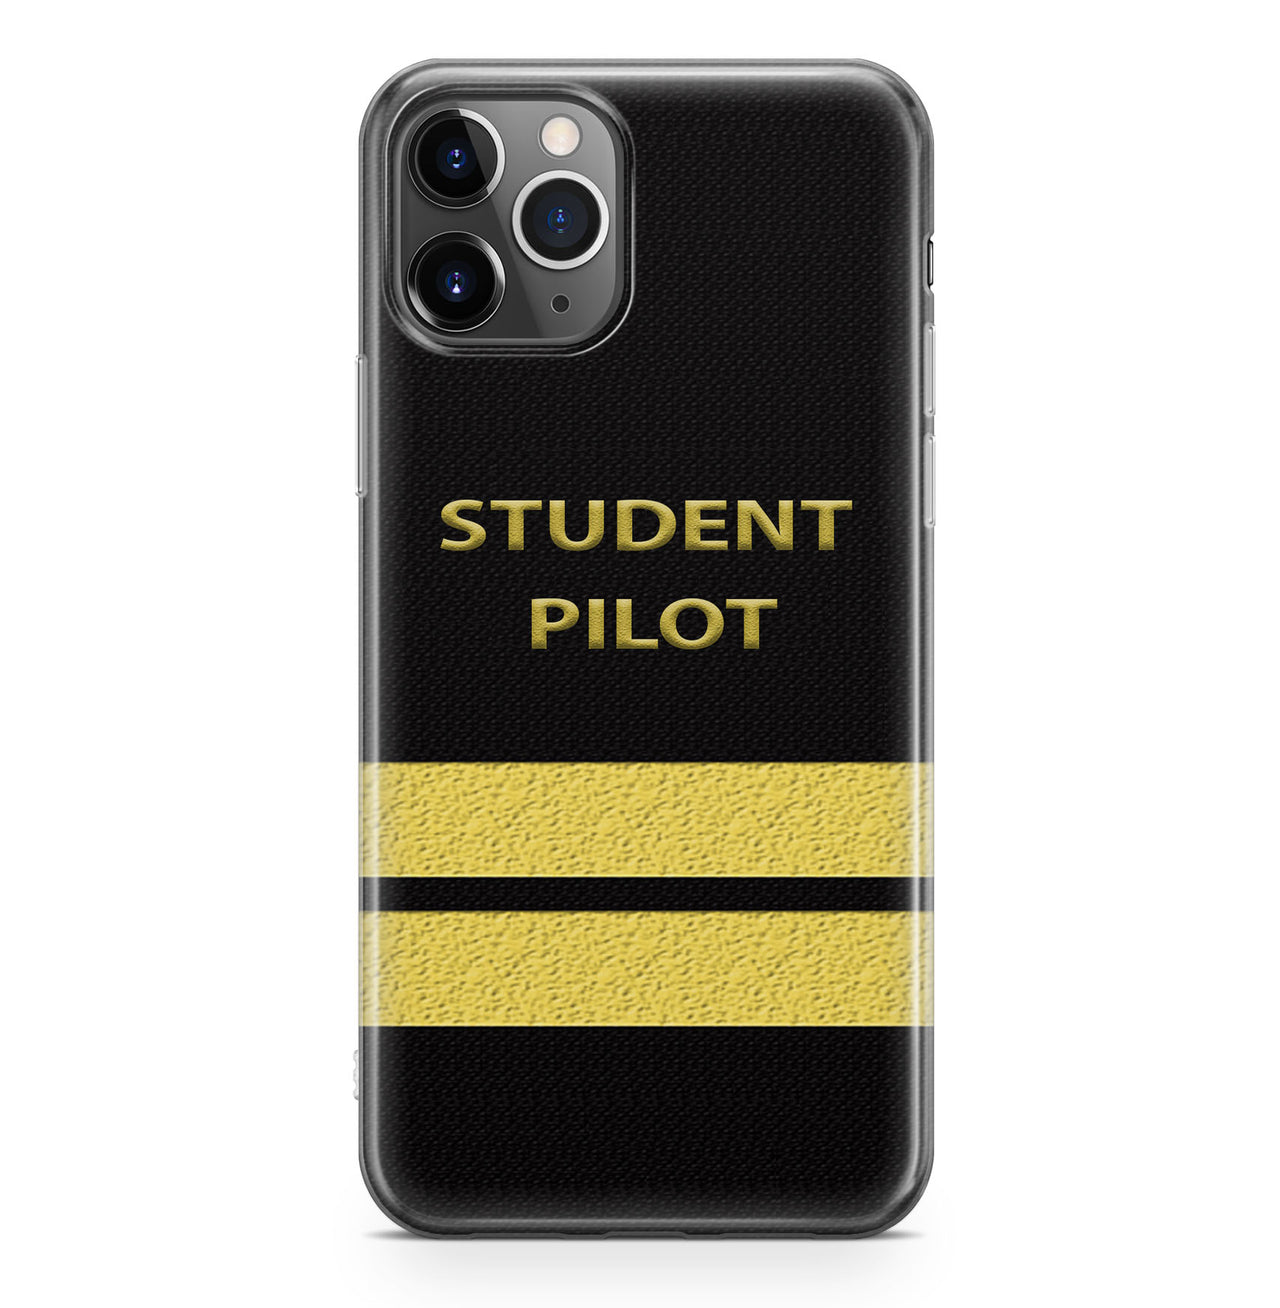 Pilot Epaulette + Rank Designed (Customizable) Designed iPhone Cases